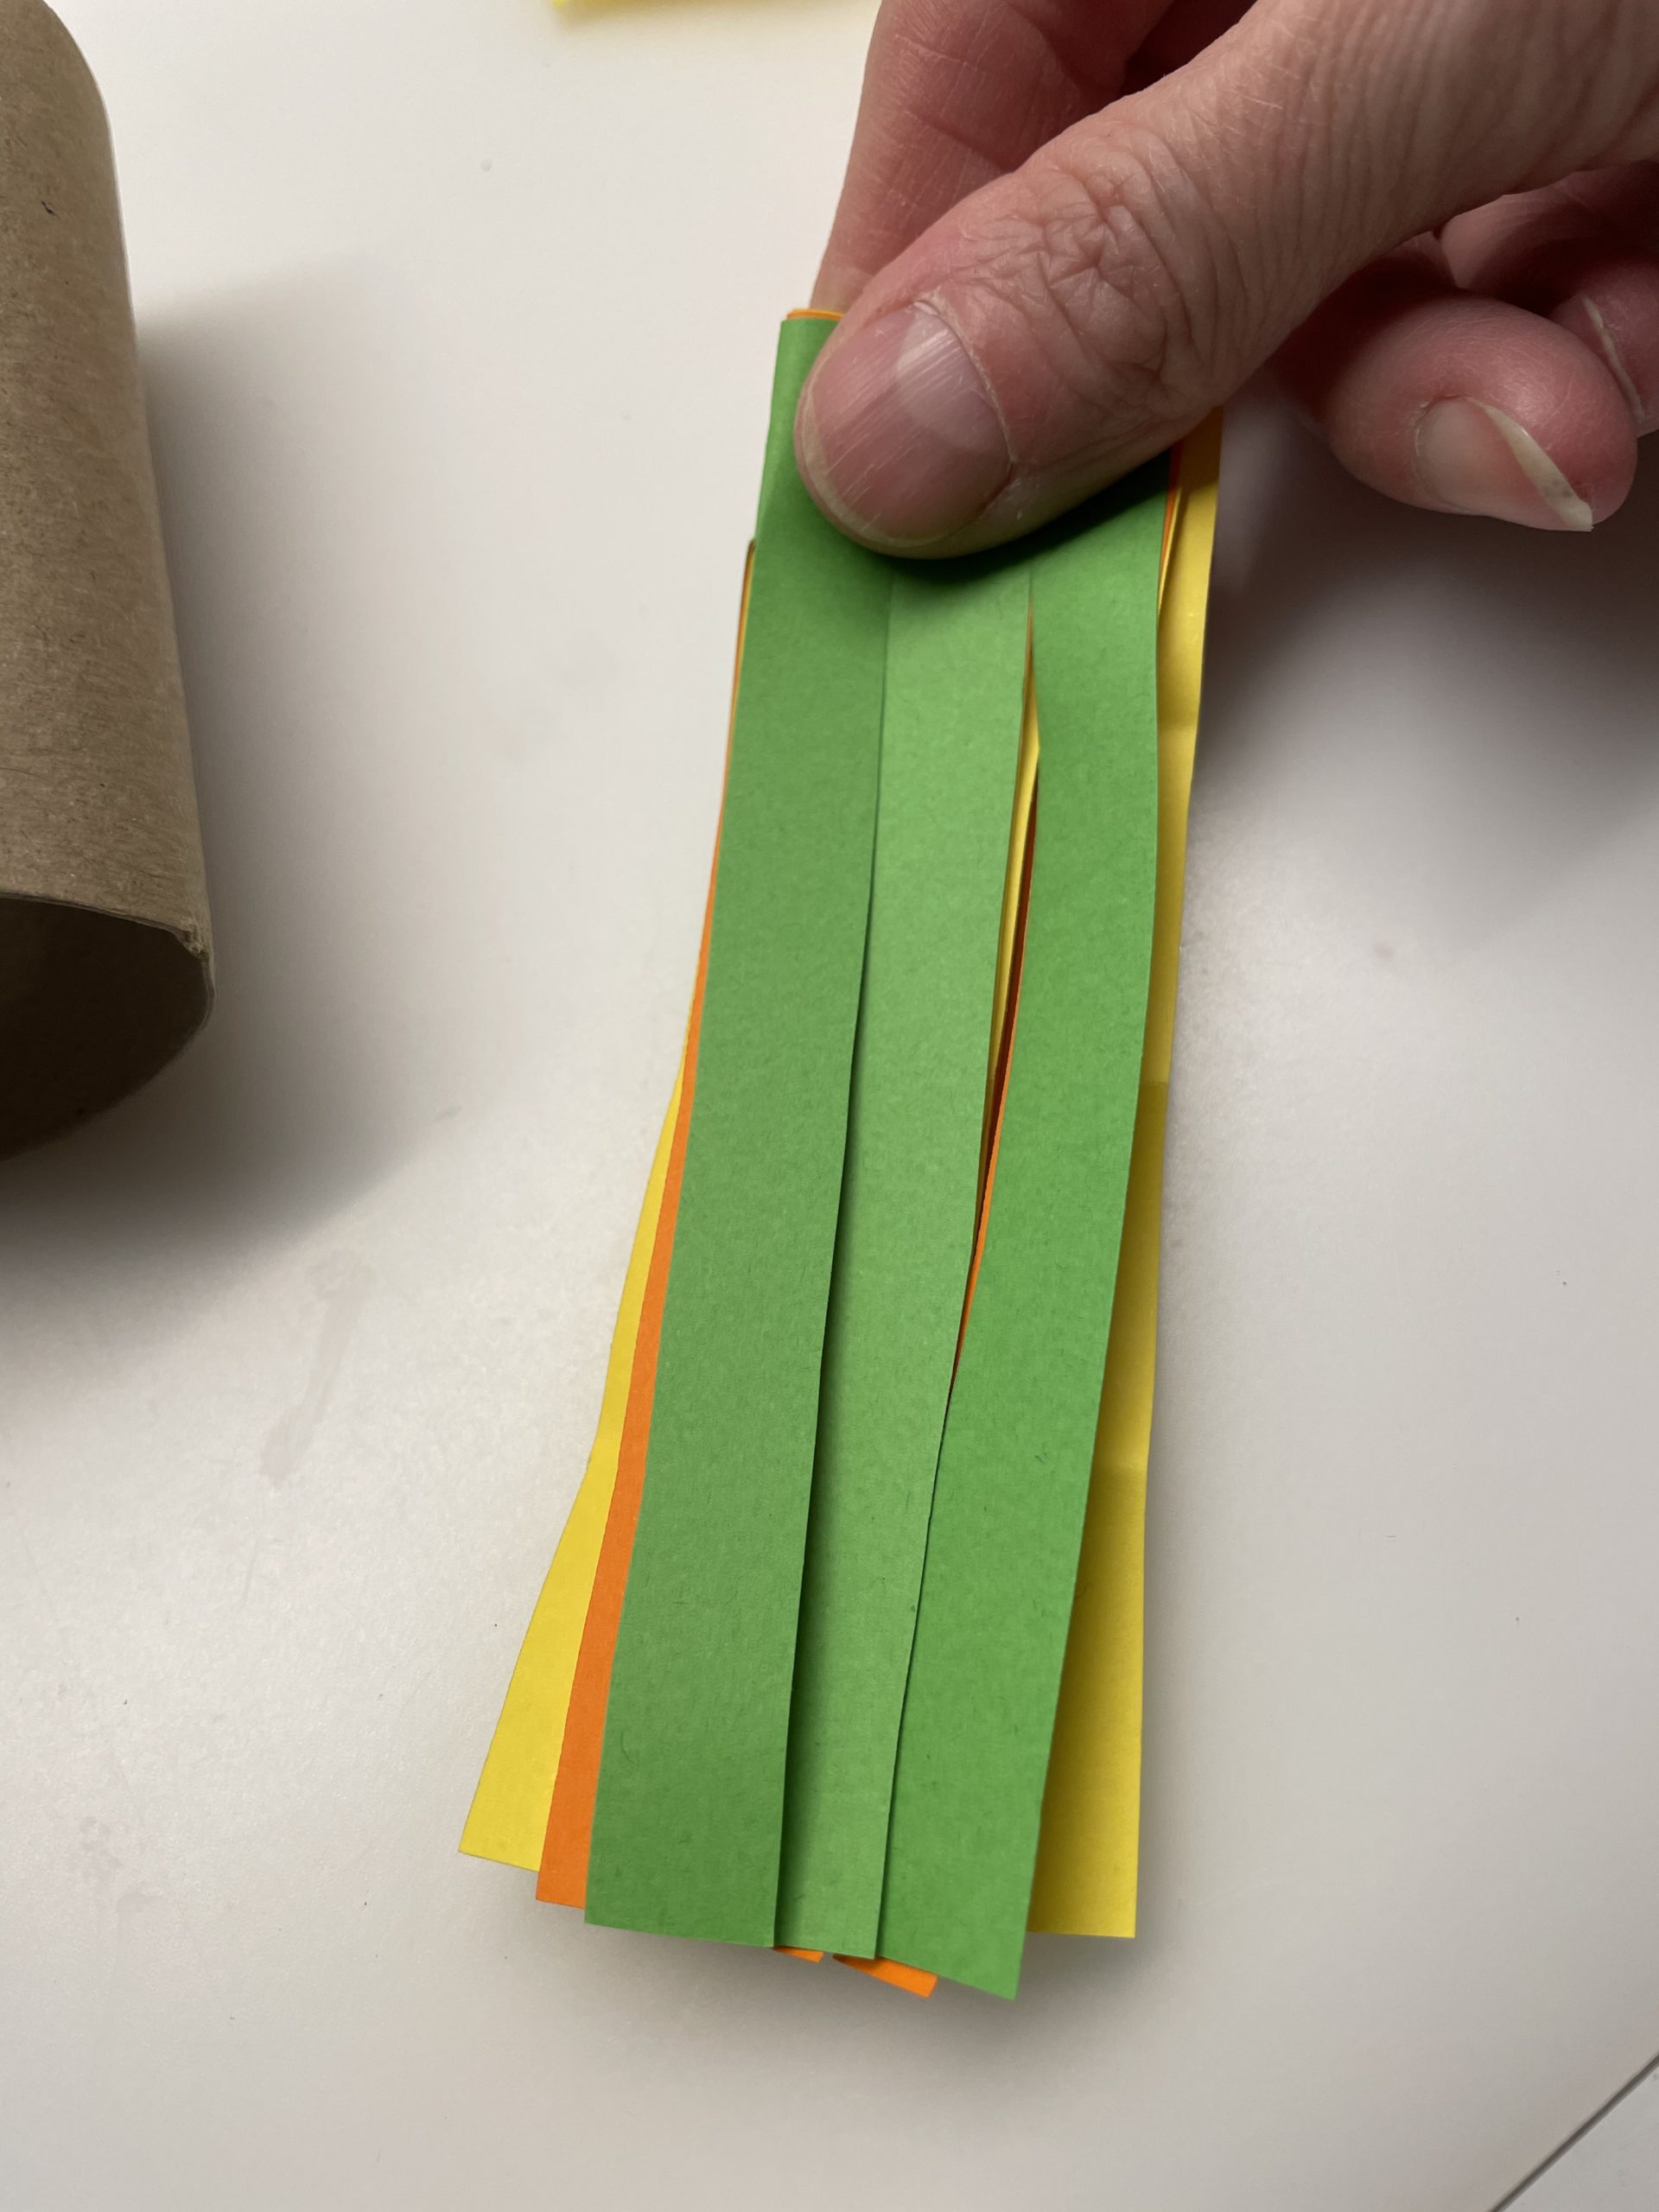 Bild zum Schritt 5 für die Kinder-Beschäftigung: 'Faltet nun das geschnittene Papier der Länge nach zusammen.'